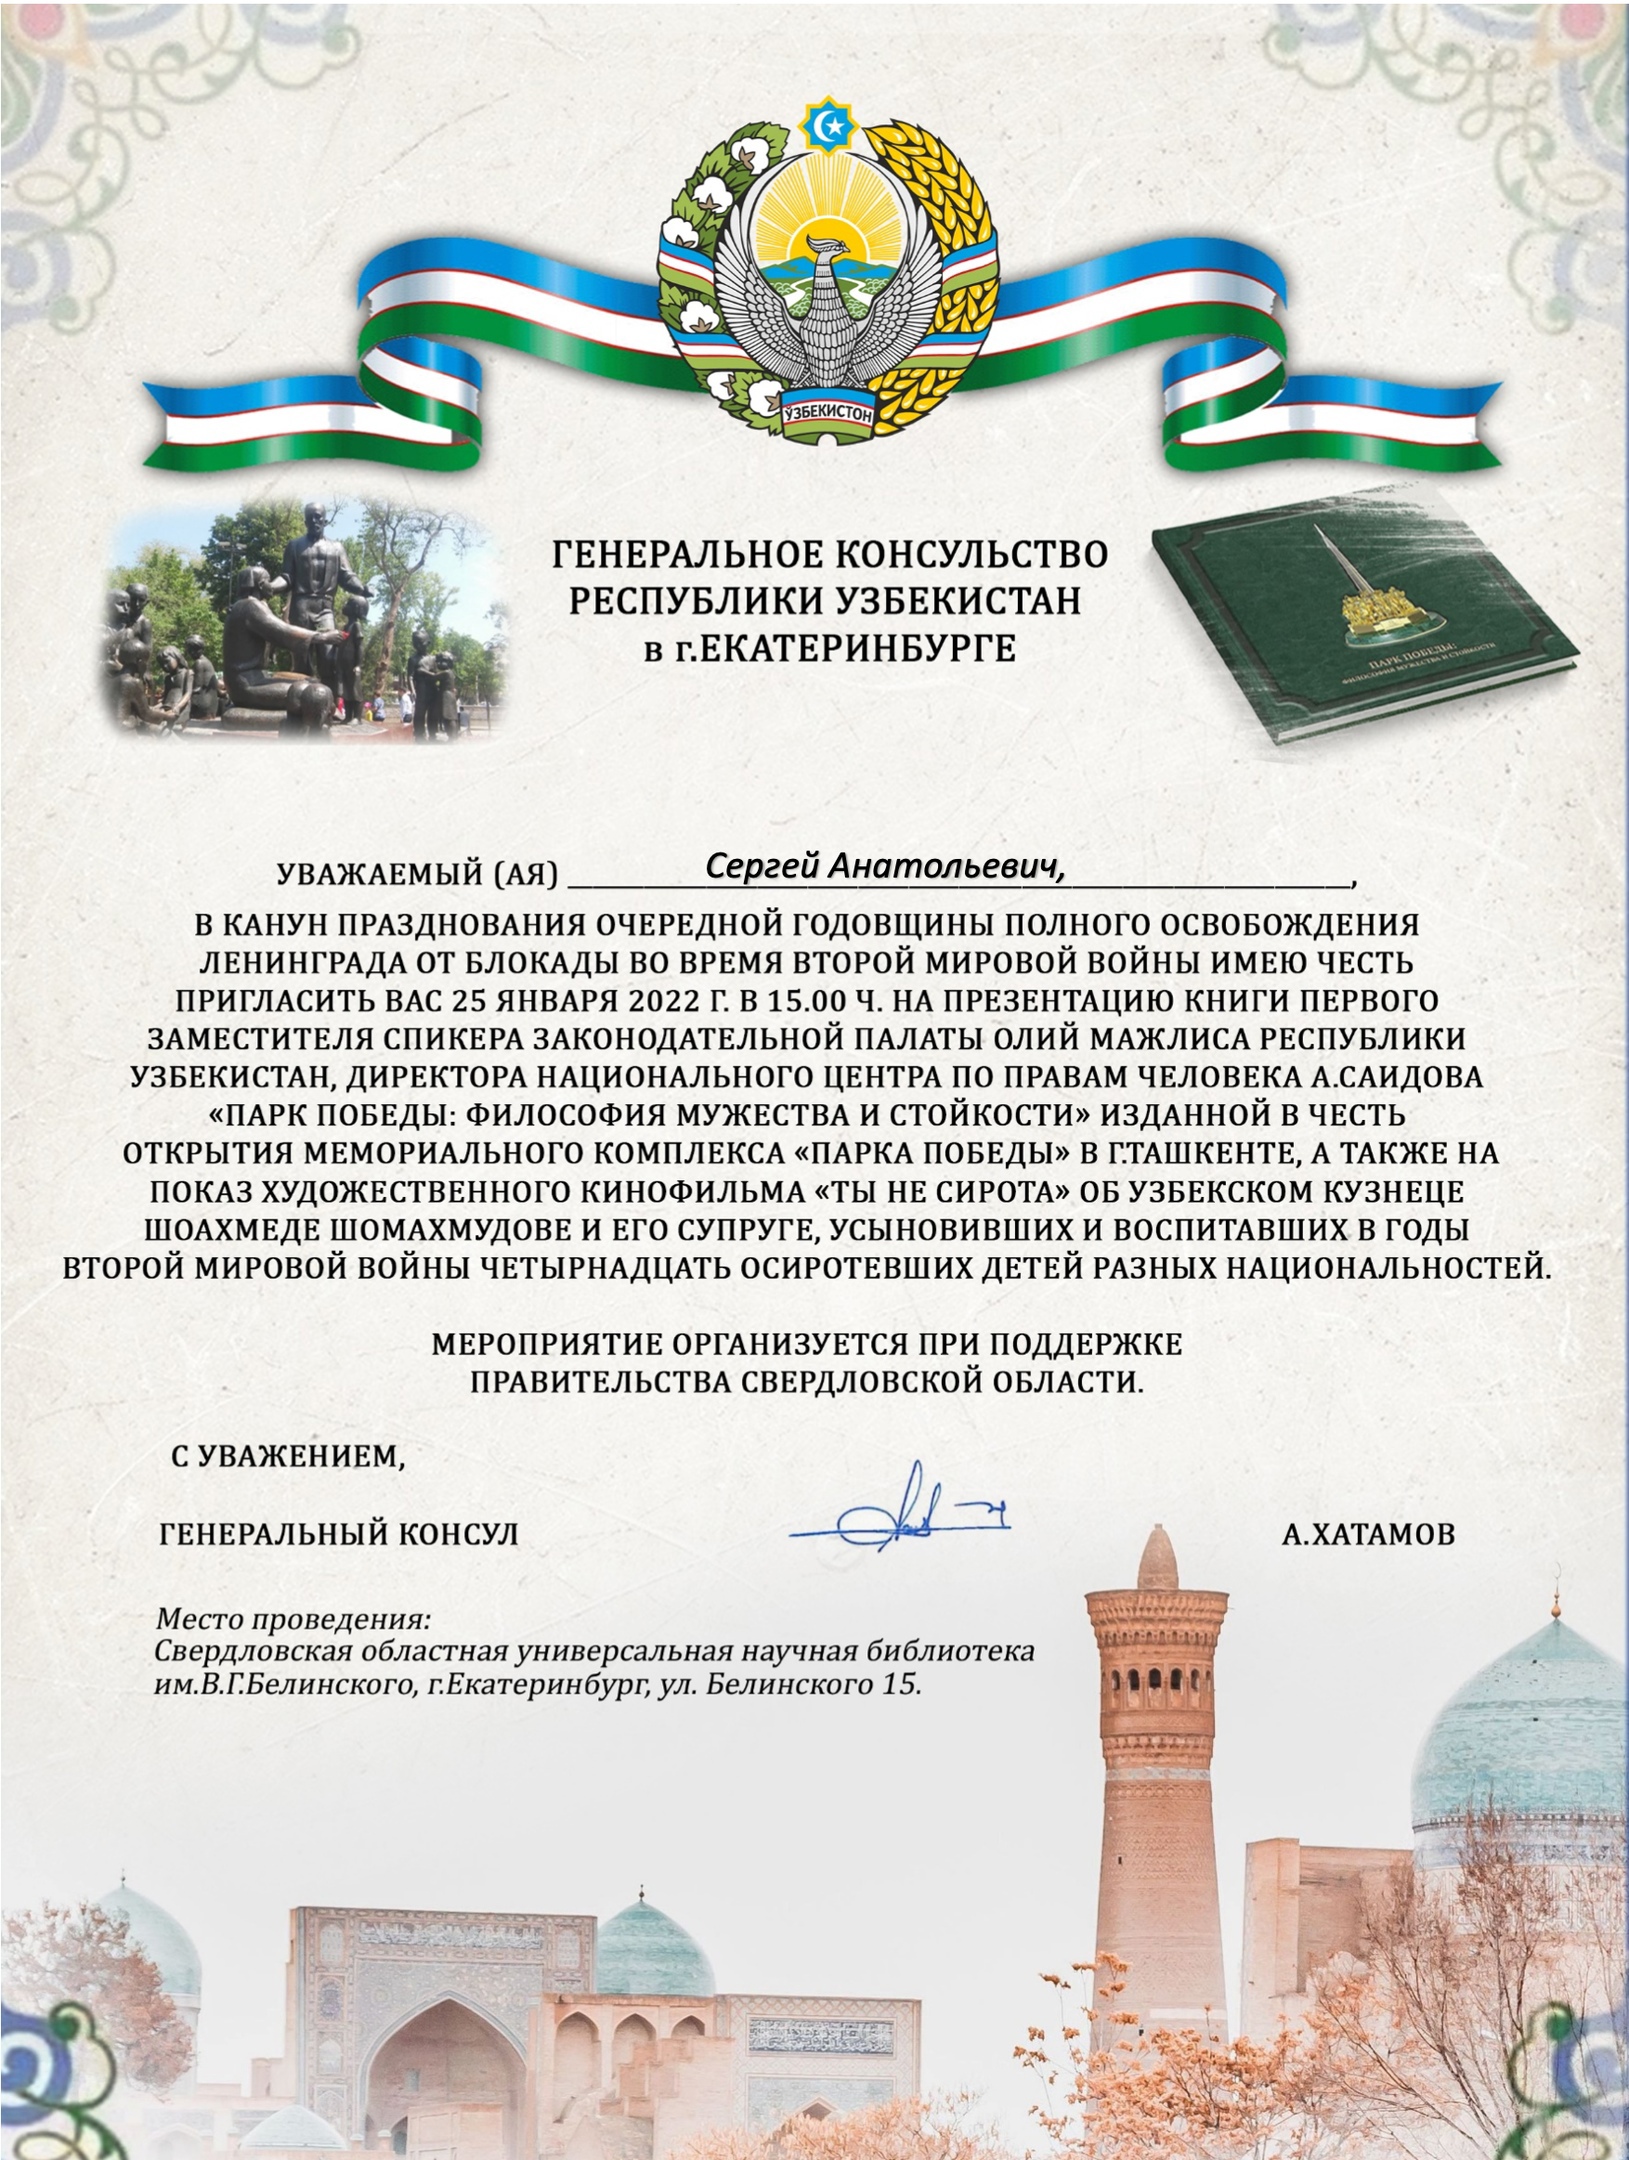 Узбекистан - пример правильного и трепетного отношения к памяти о Великой 